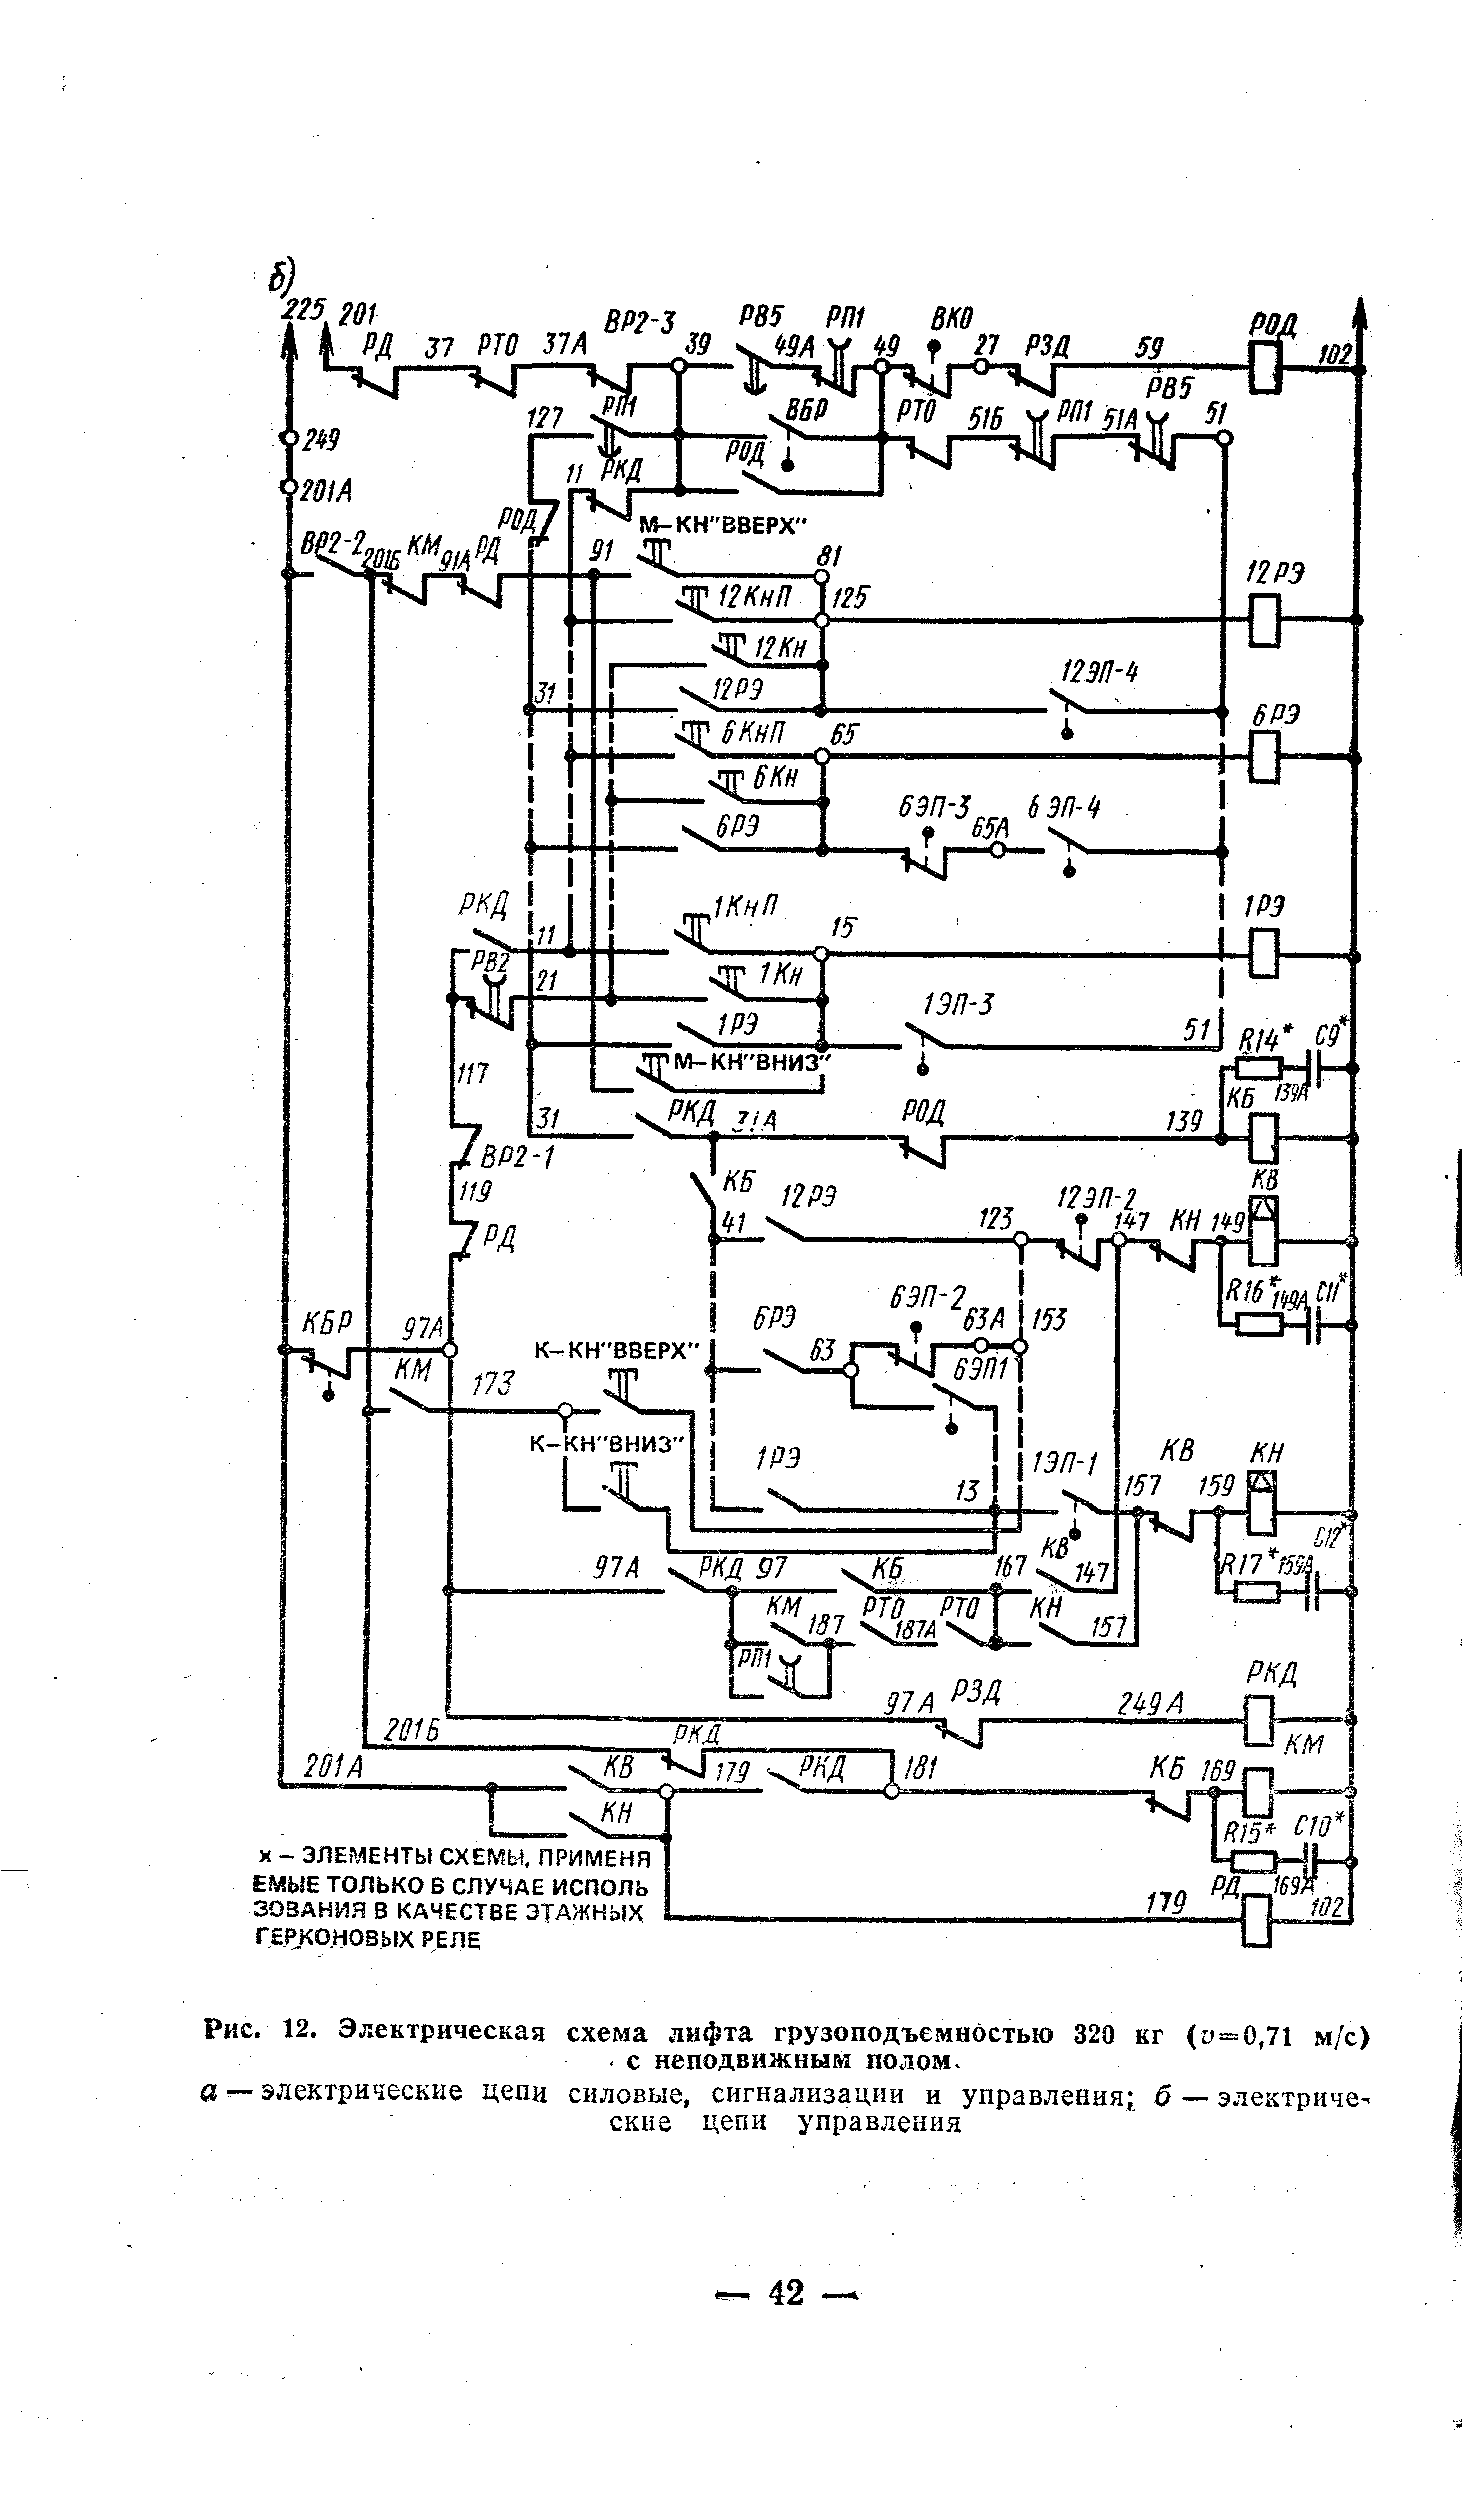 Рис. 12. Электрическая схема лифта грузоподъемностью 320 кг <у=0,71 м/с). с неподвижным полом.
